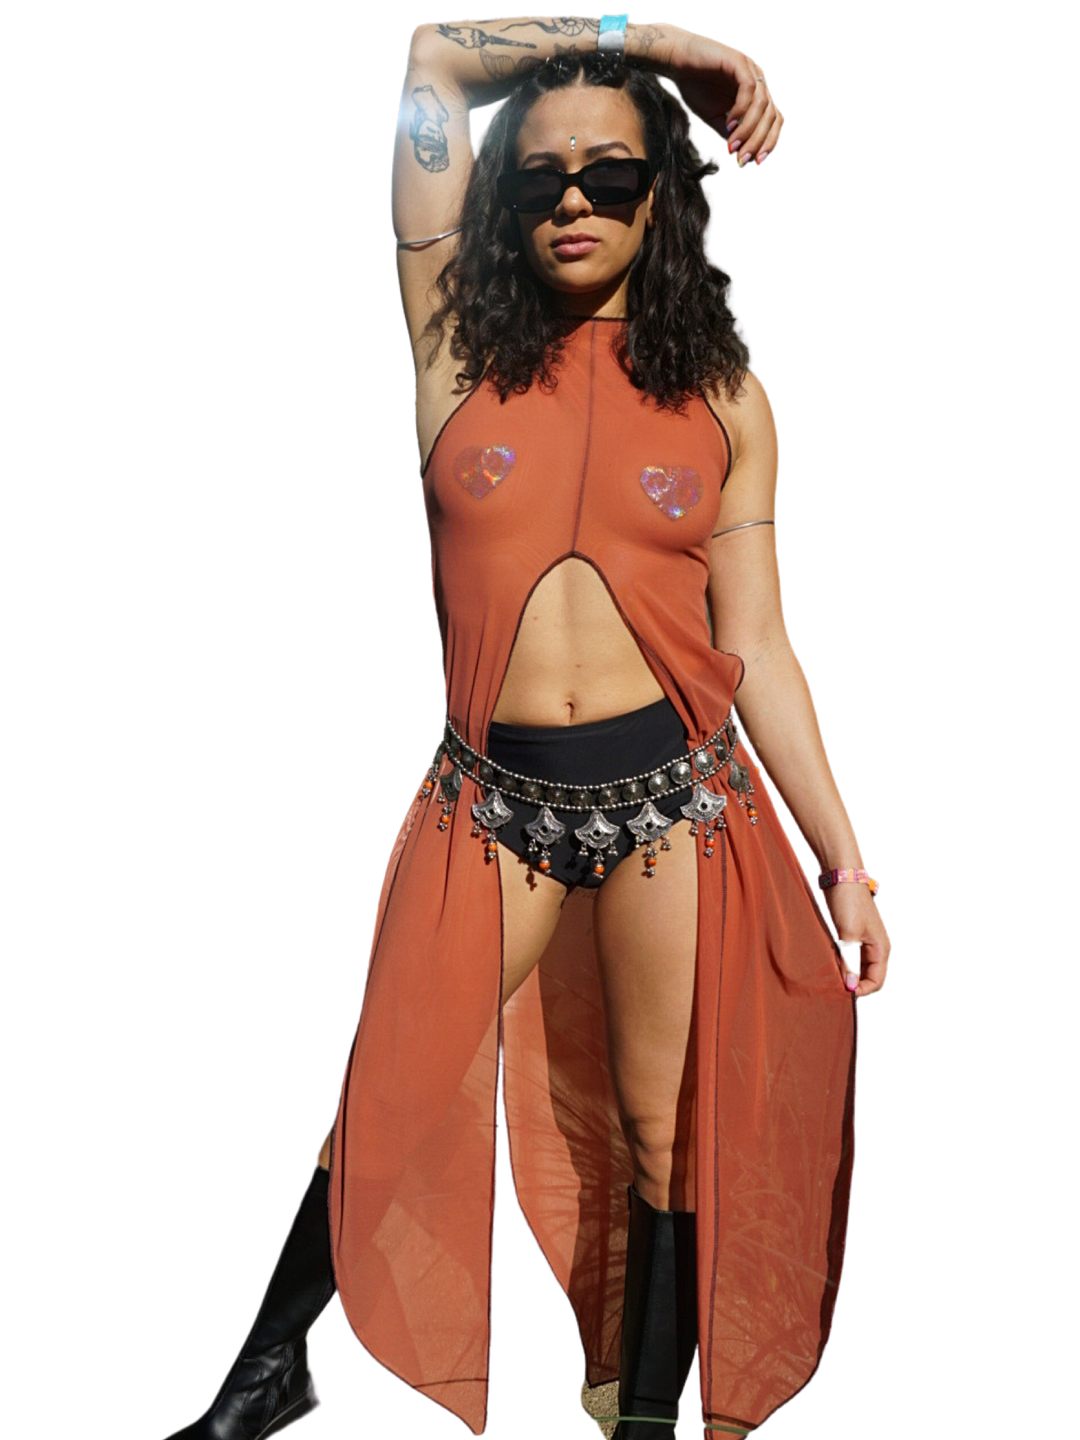 La Cosa Mesh Dress in Terracotta bodysuit oraingopartners   